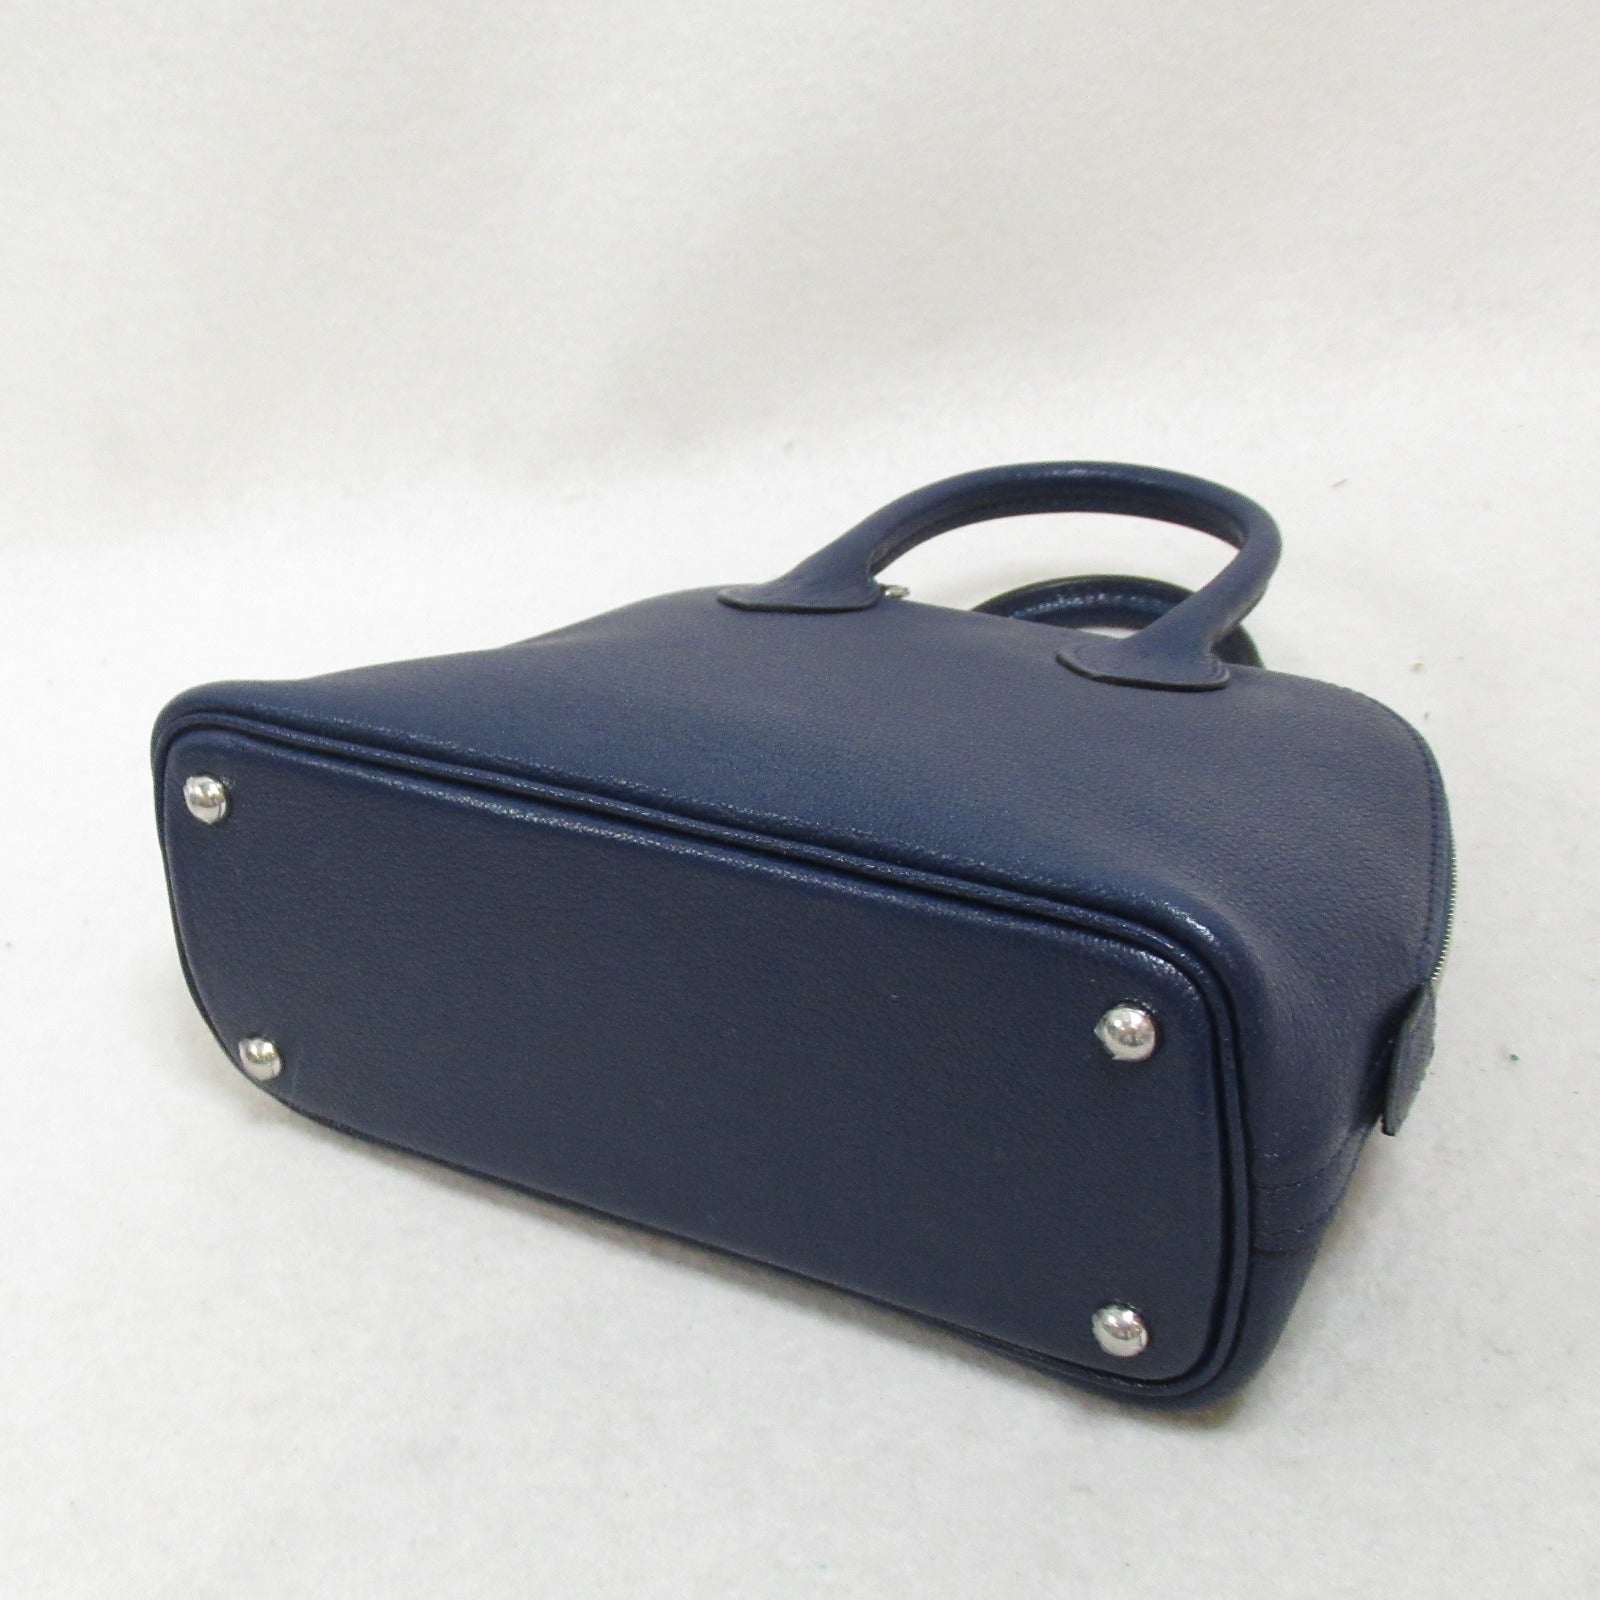 Hermes Bolide 1923 Mini Handbag Handbag Handbag Handbags Leather Sheebly Mizor  Navy